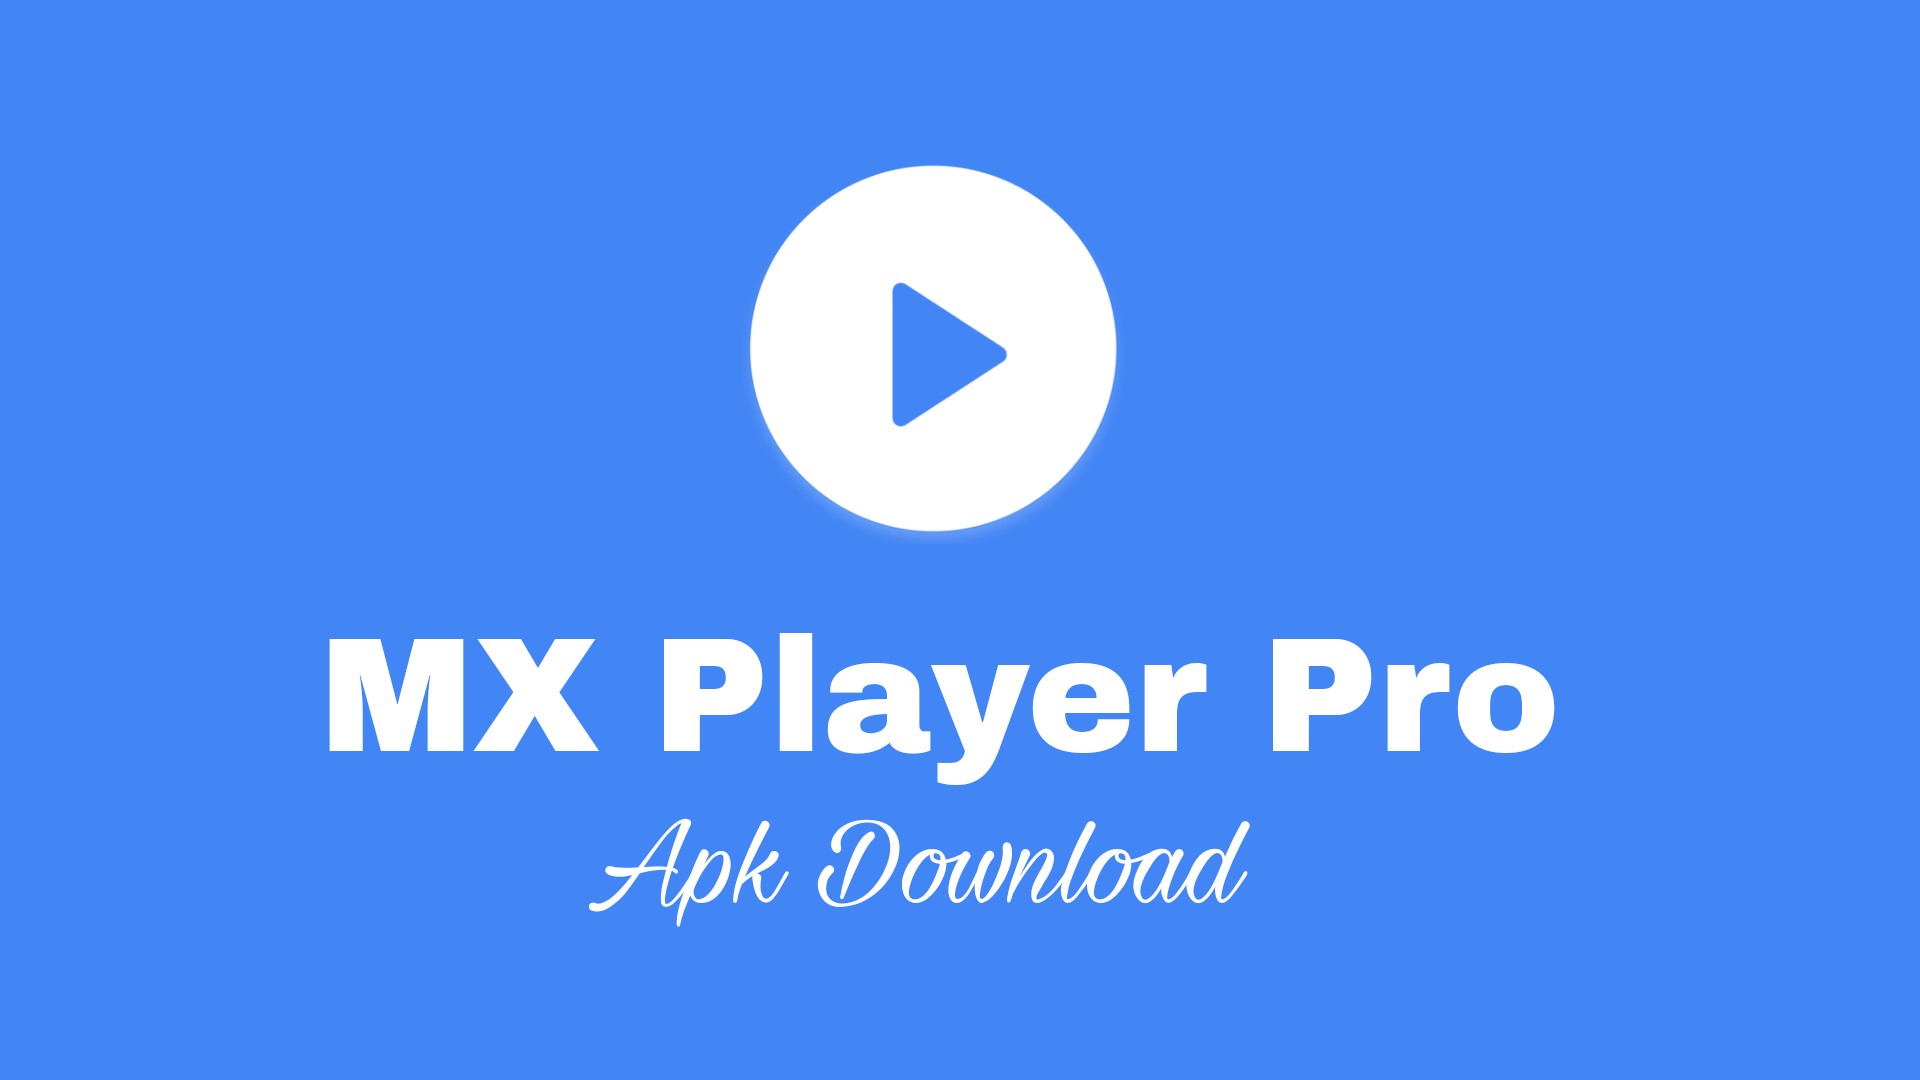 mx player pro apk atualizado